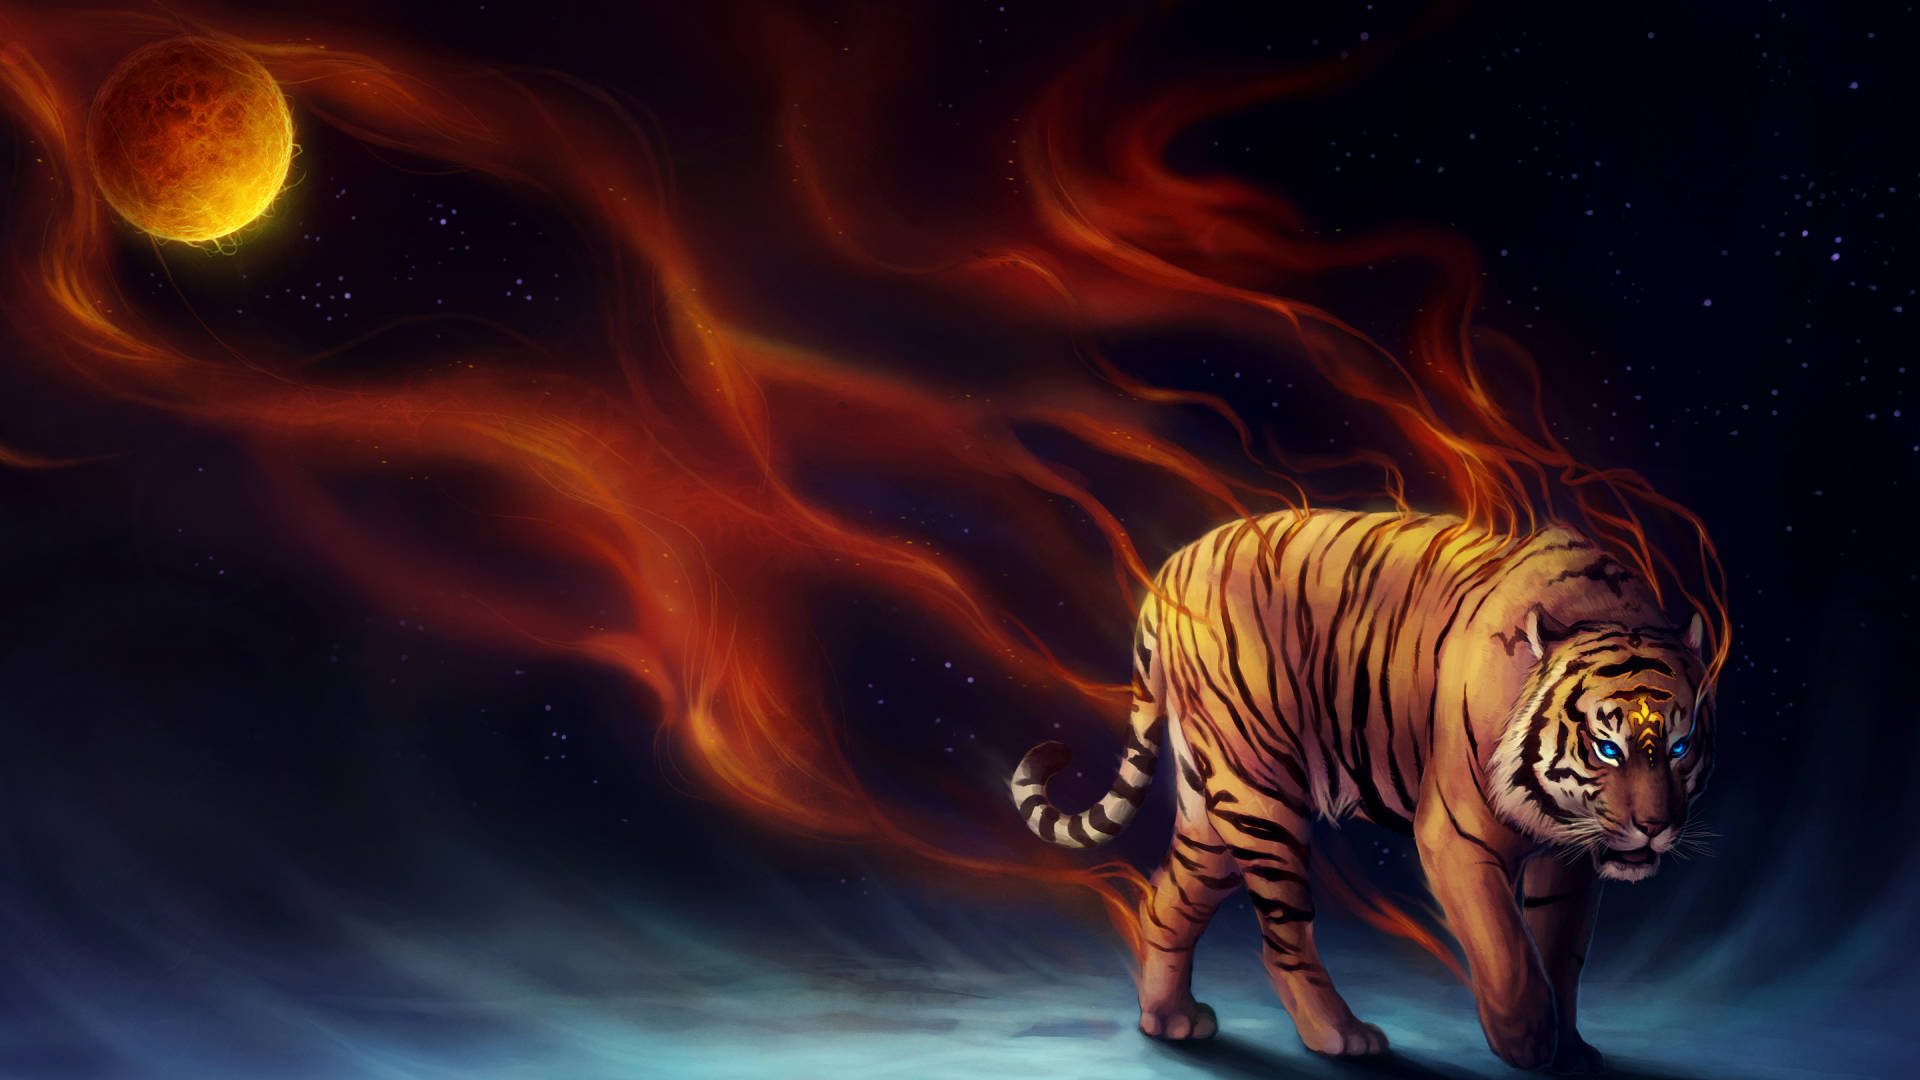 Cool Tiger Moon Digital Art Wallpaper